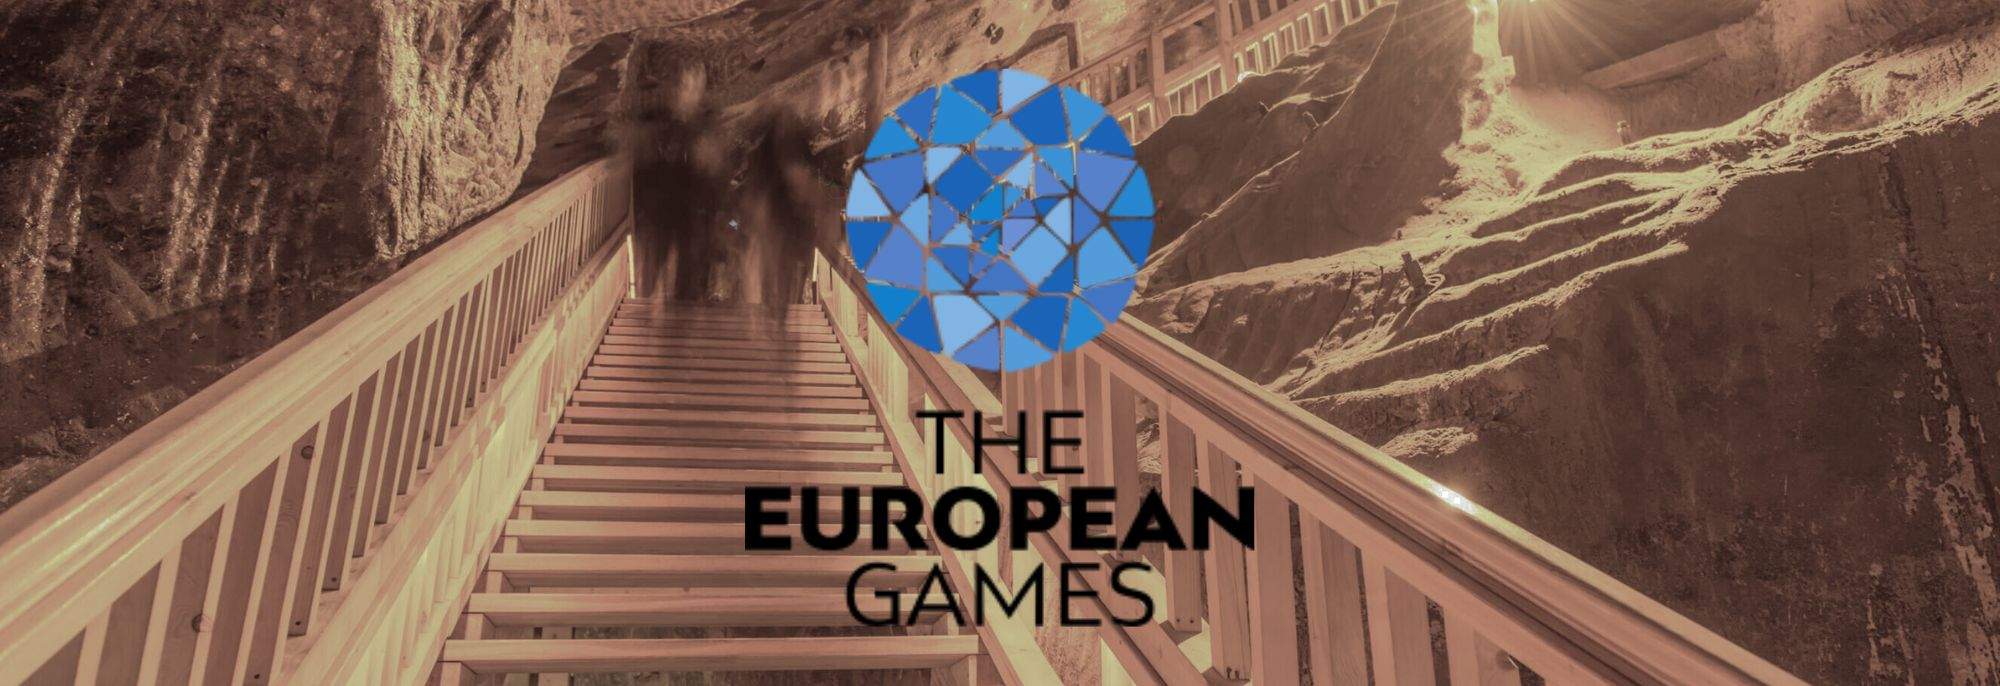 Luz Subterránea: La Llama de la Paz y las Medallas de los Juegos Europeos Reposan Profundamente en la Mina de Sal de Wieliczka